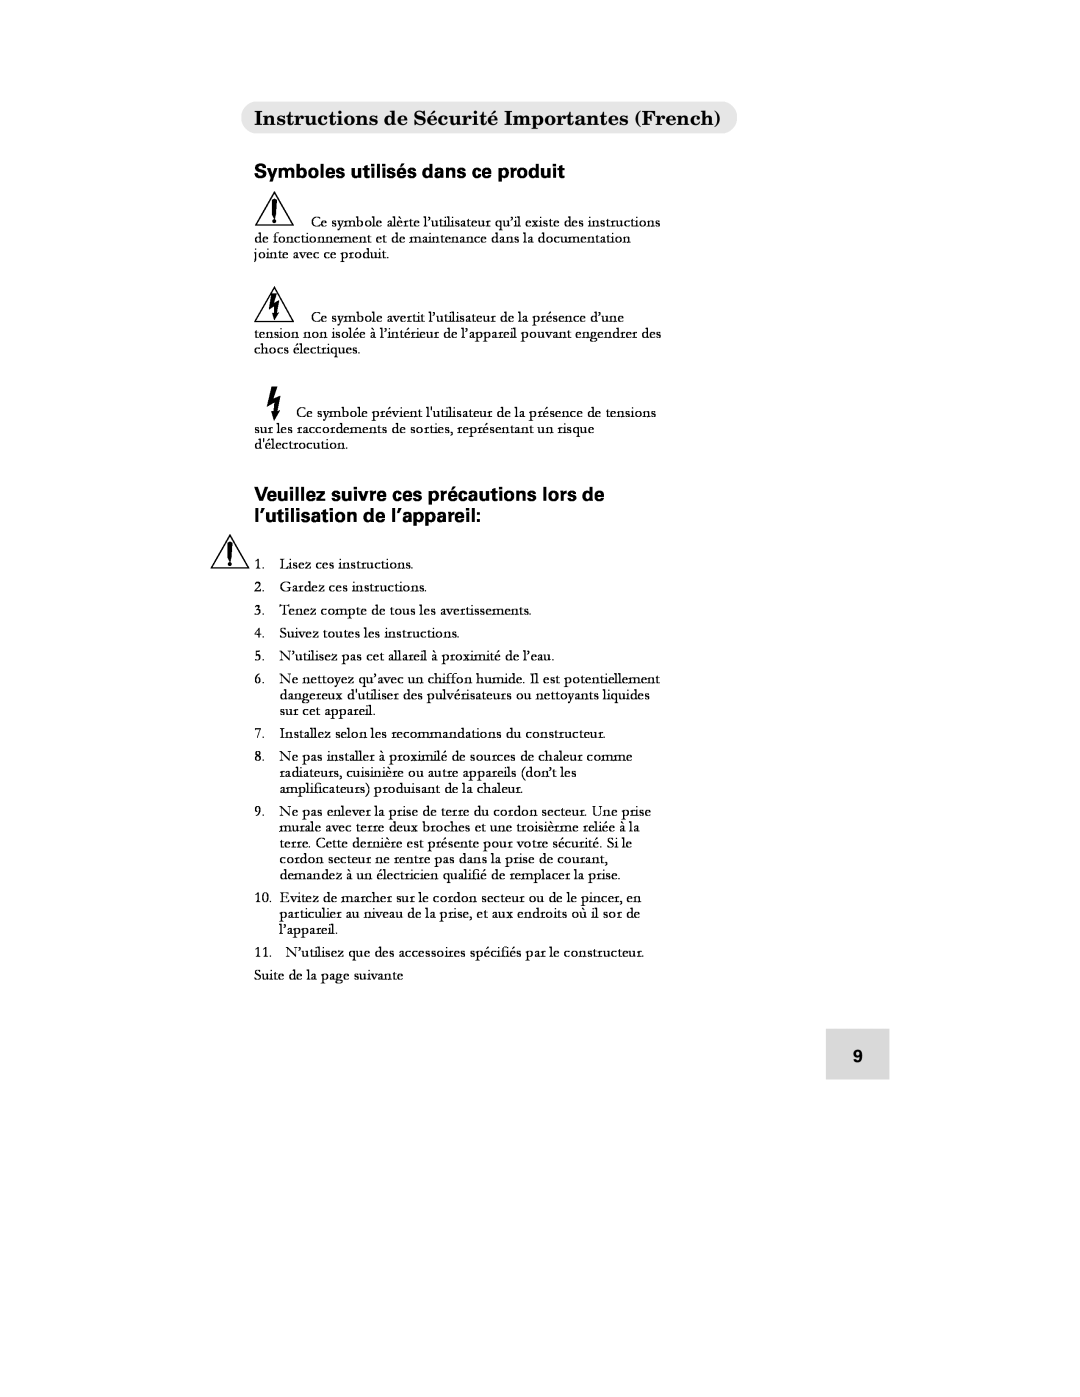 Alesis DEQ830 manual Instructions de Sécurité Importantes French, Symboles utilisés dans ce produit 